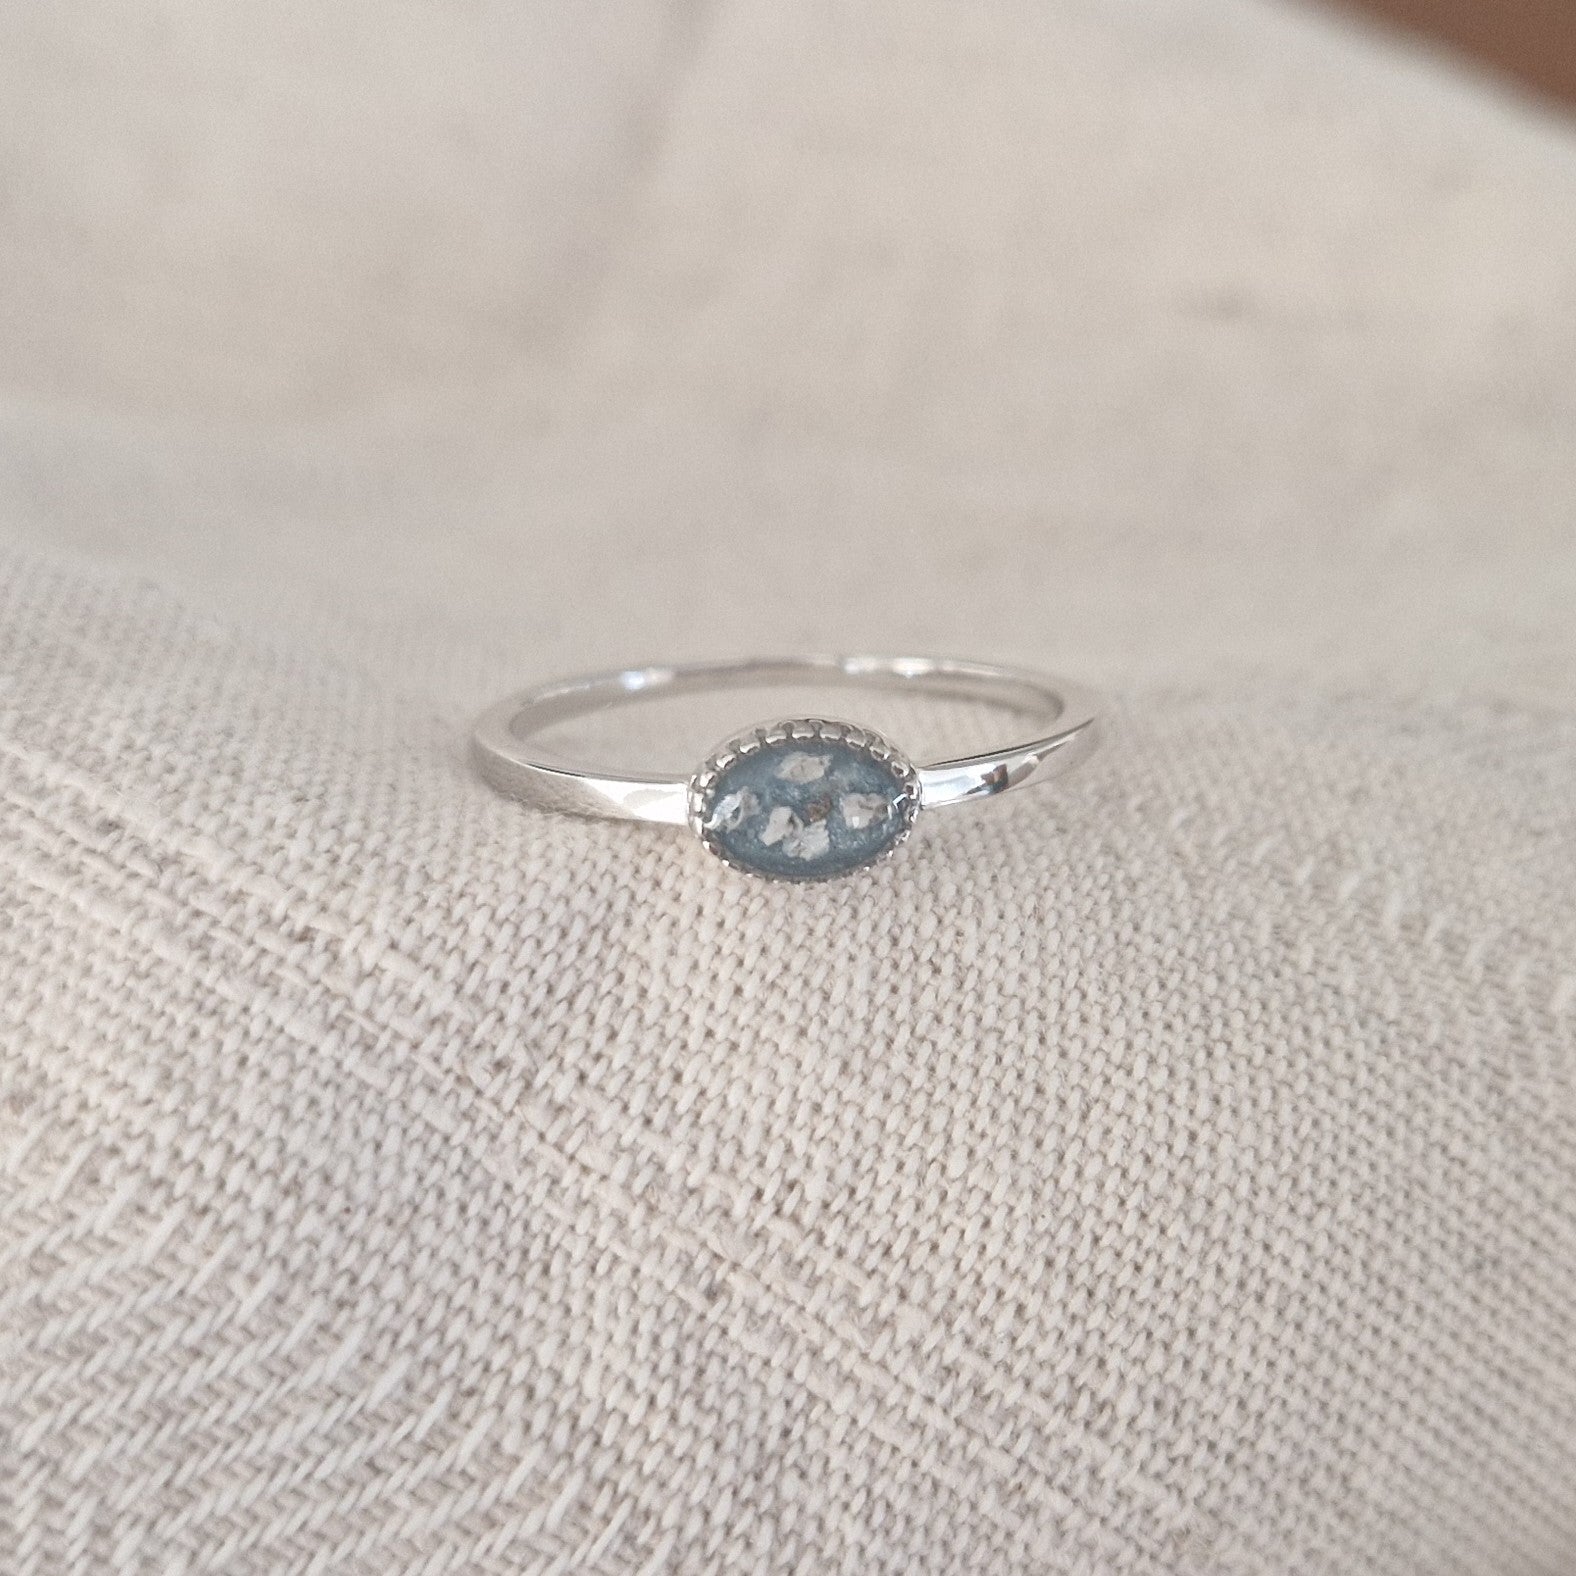 Afmeting ovaal: 8x6 mm, Ringband: 1.5 mm. Gedenksieraad, ring met een hartje er boven op , waar zichtbaar as of haar  in verwerkt wordt. De asring is leverbaar in zilver en in 14 en 18 KT geelgoud/witgoud en roségoud.